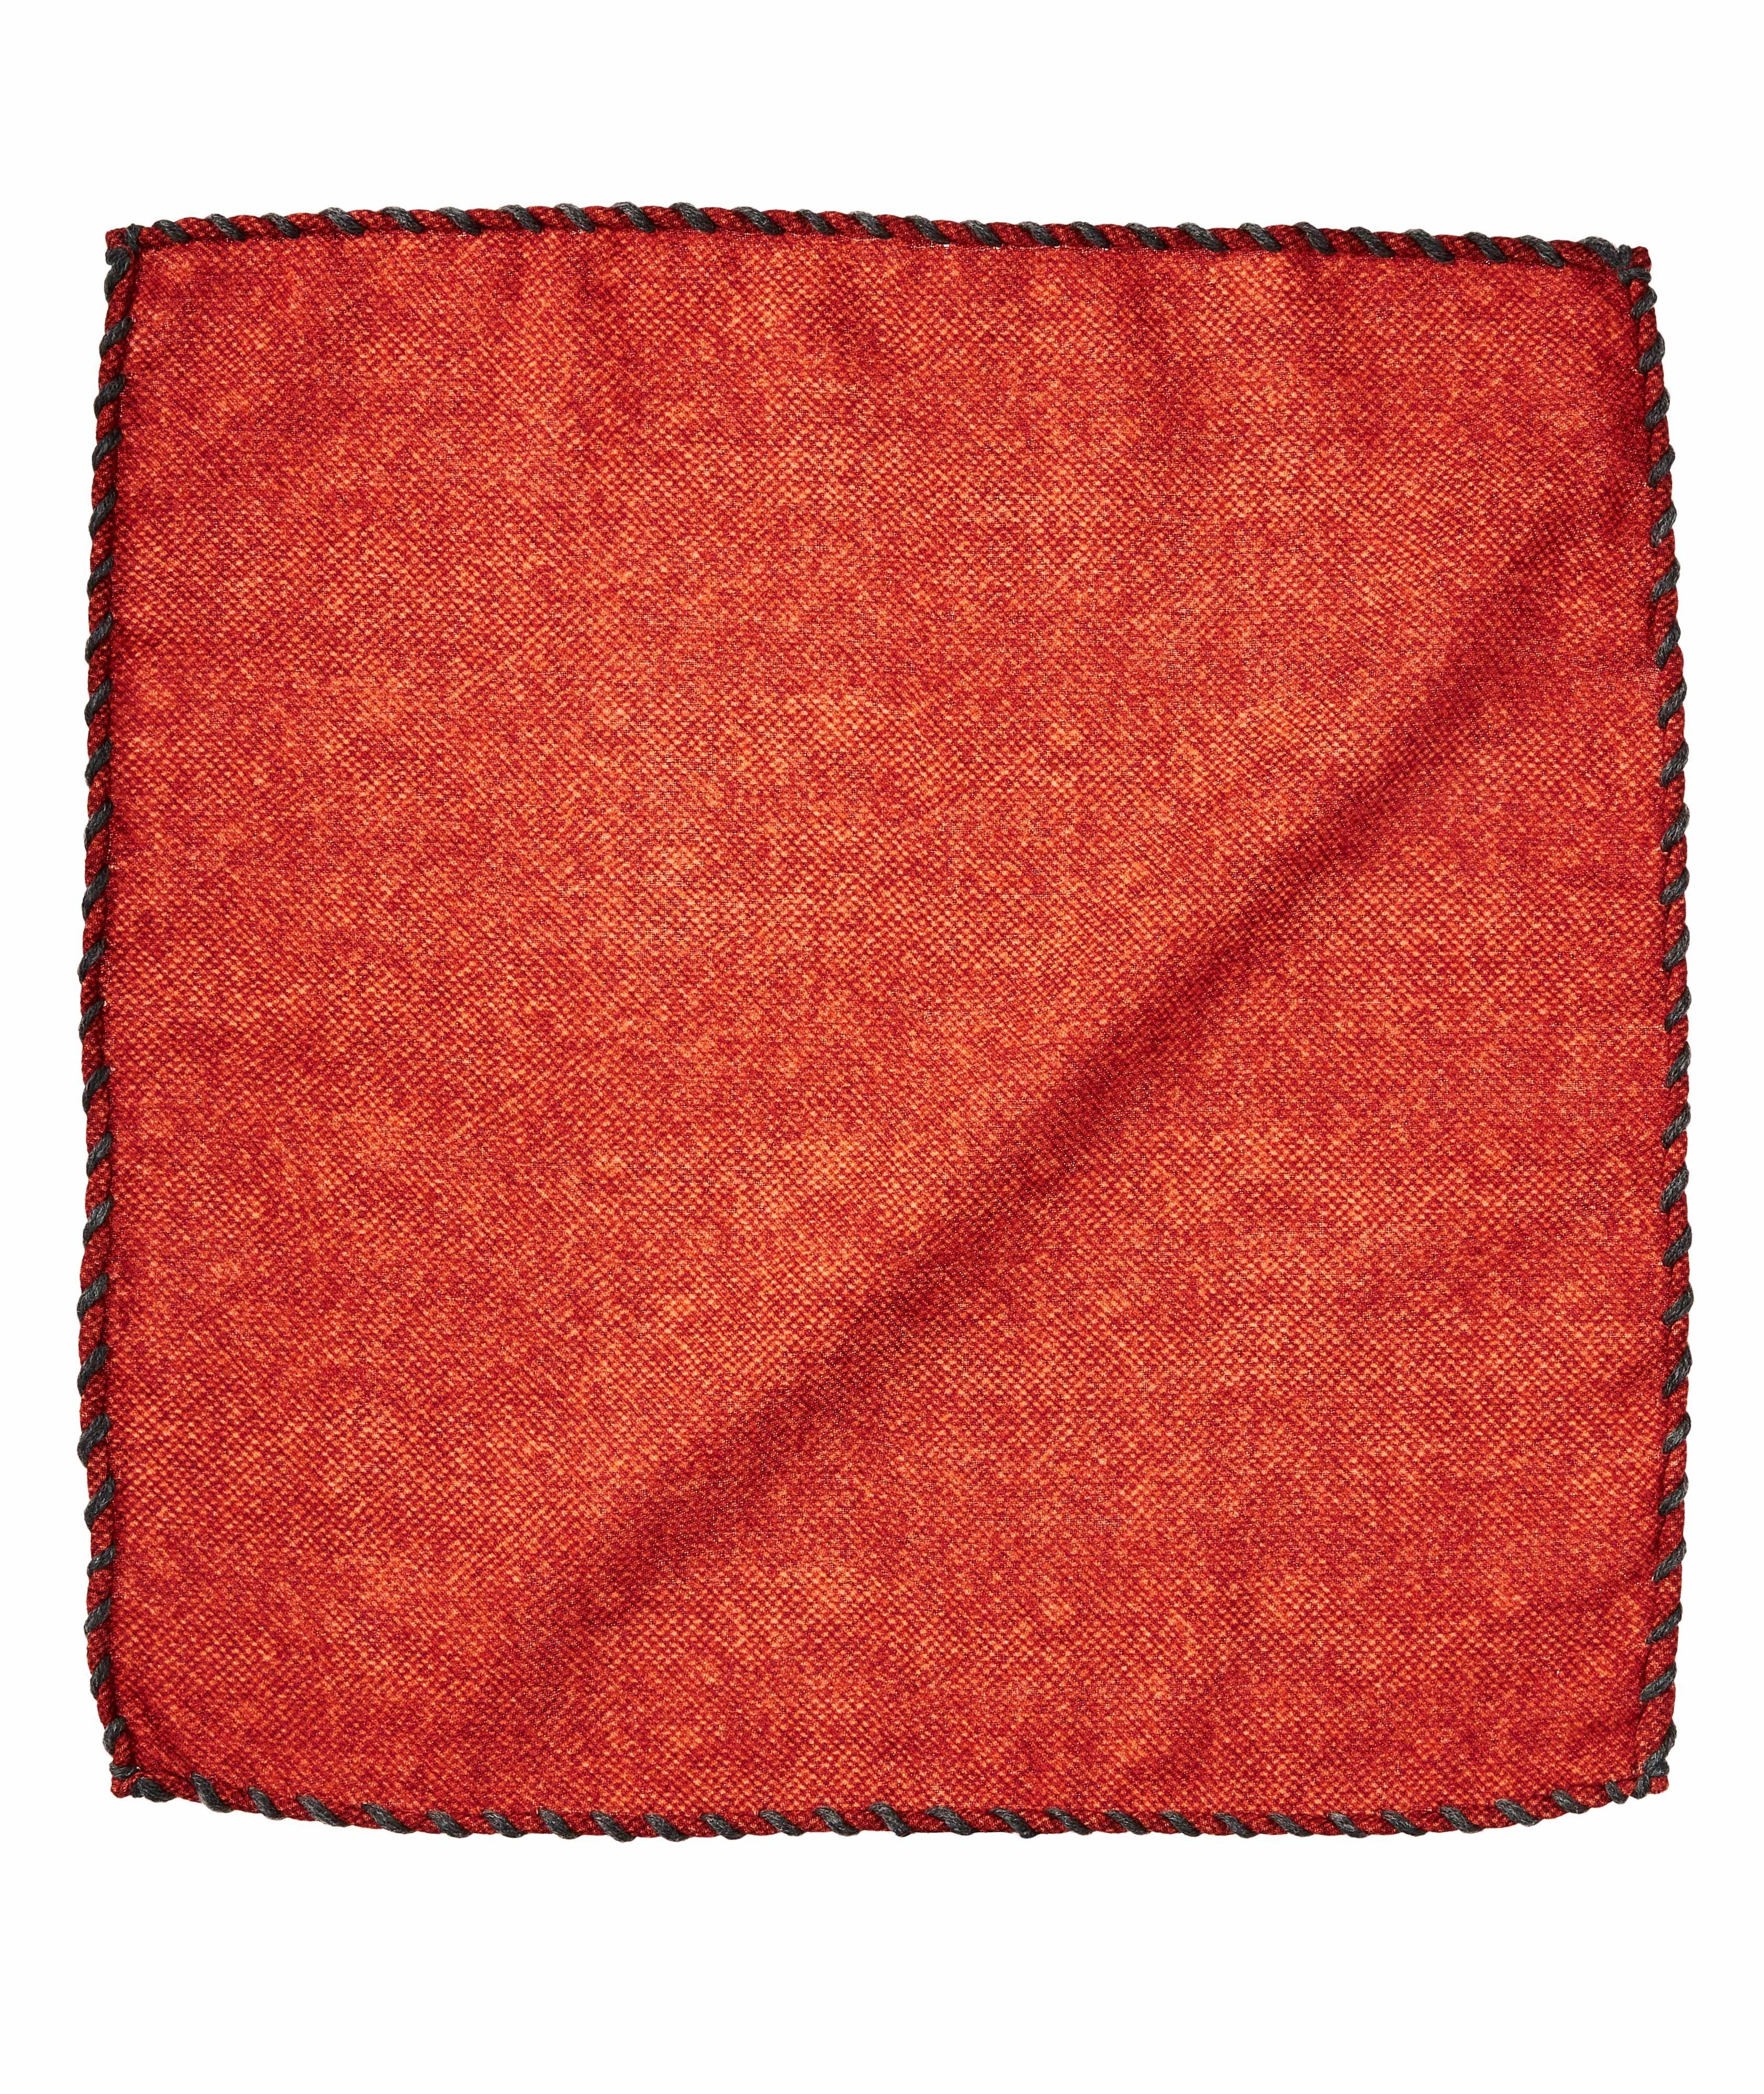 Wool Pocket Square image 0